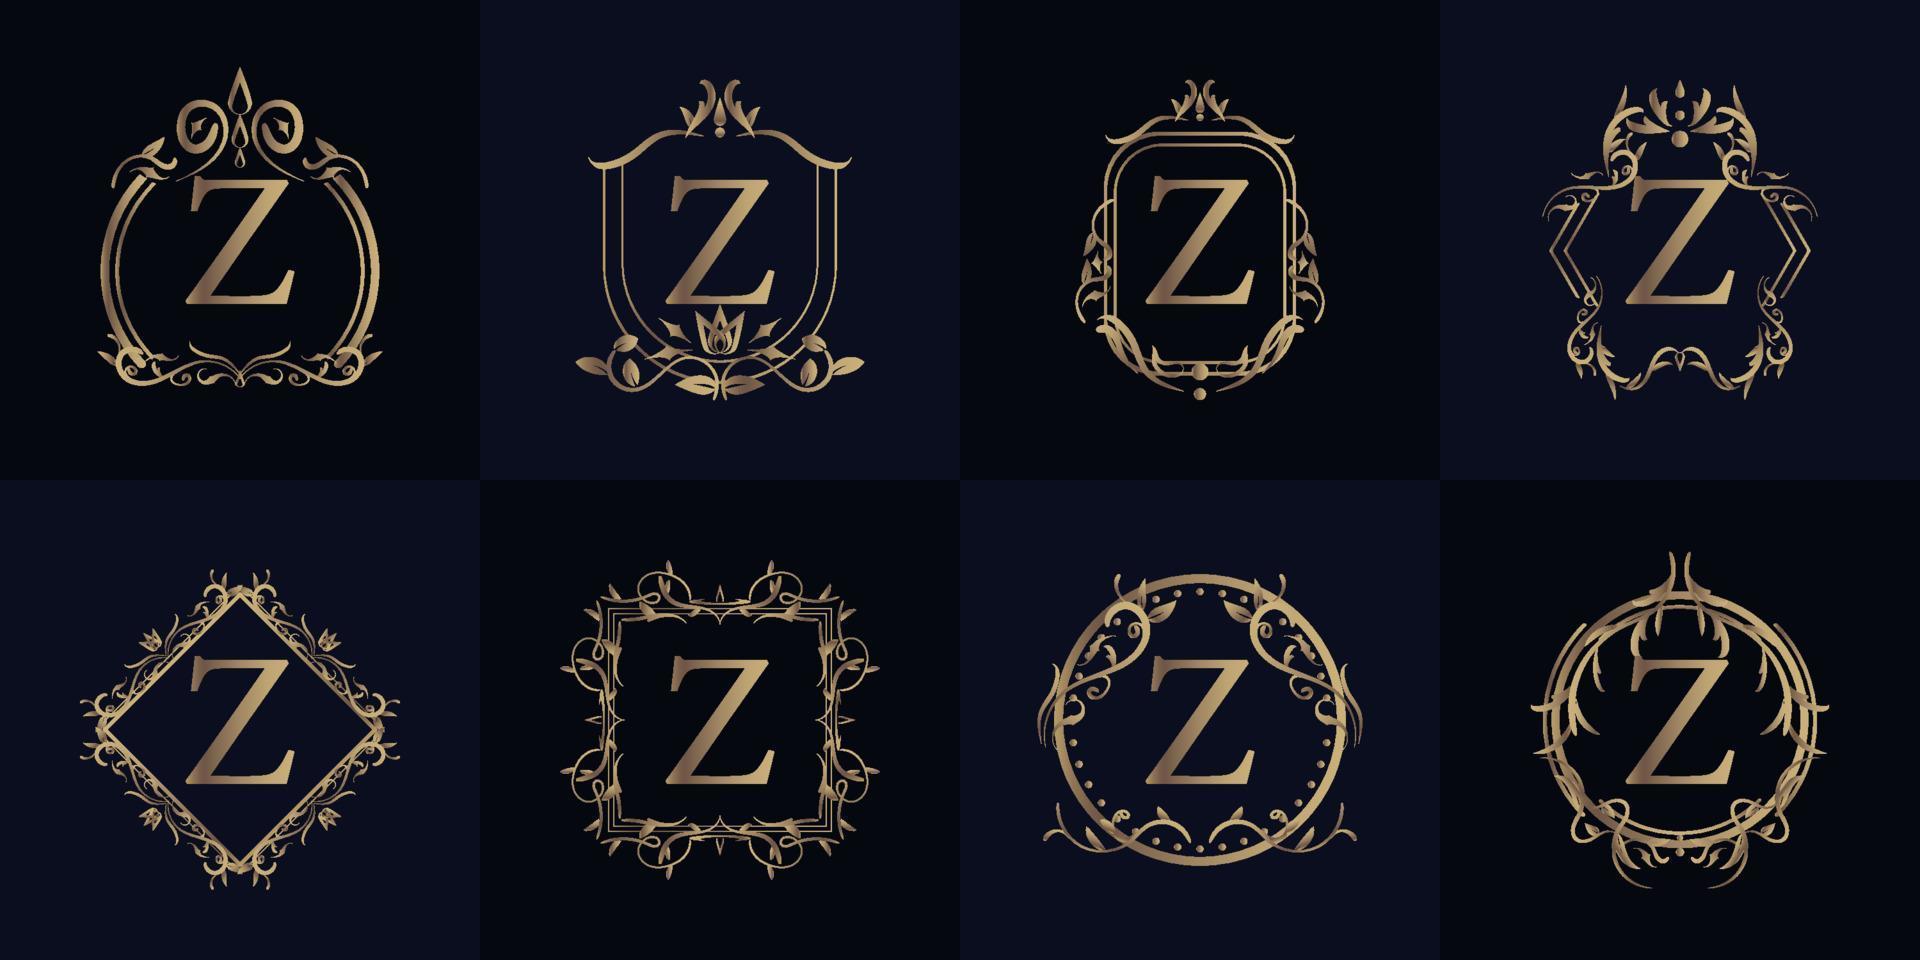 logo eerste z met luxe ornament of bloemframe, set collectie. vector